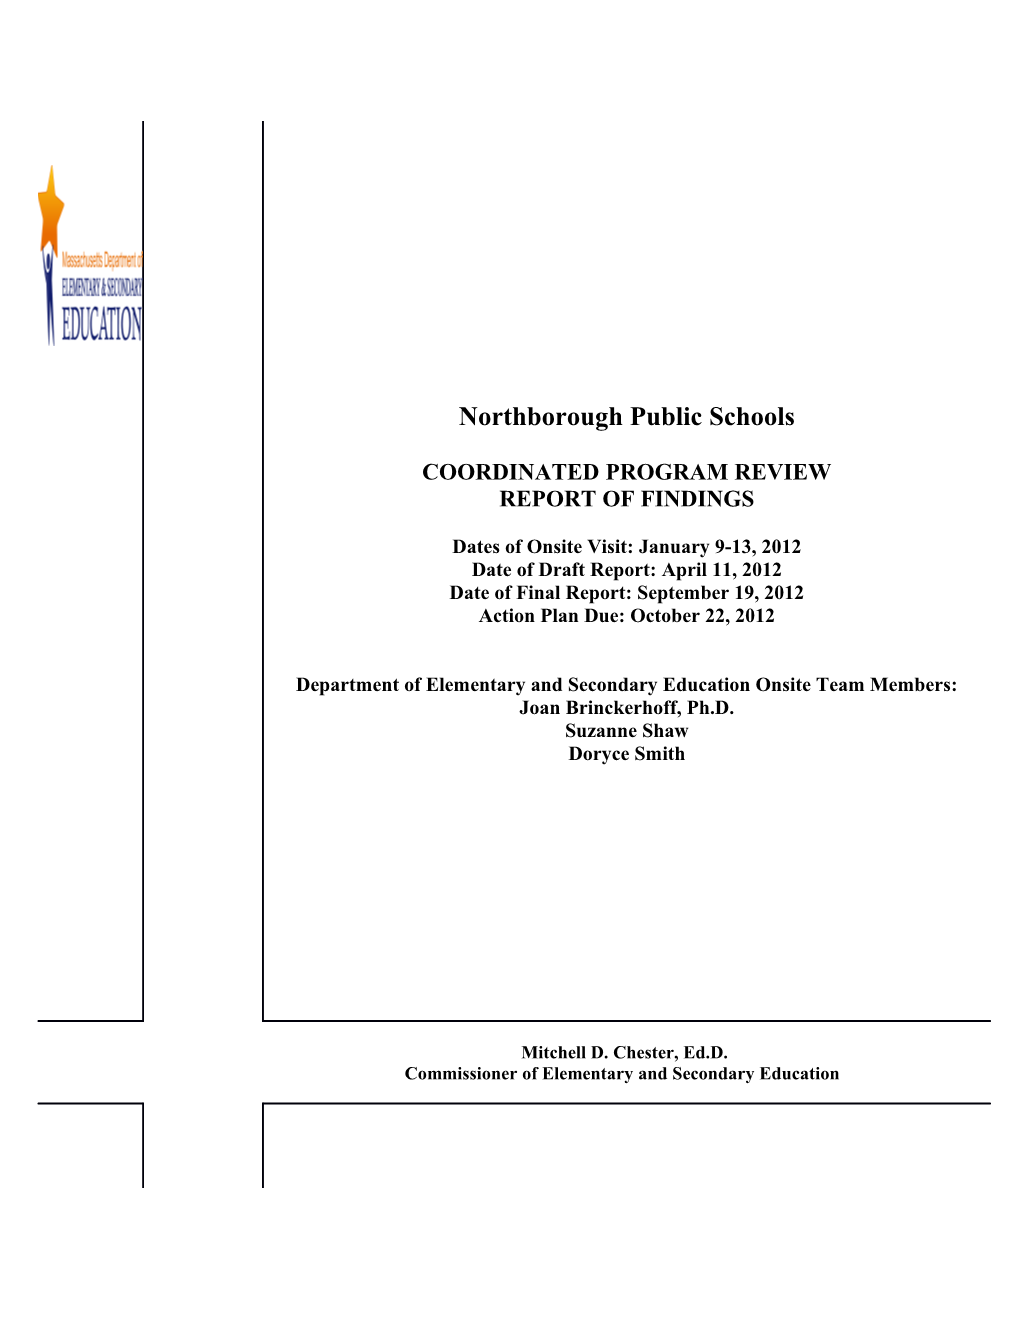 Northborough Public Schools Final Report 2012